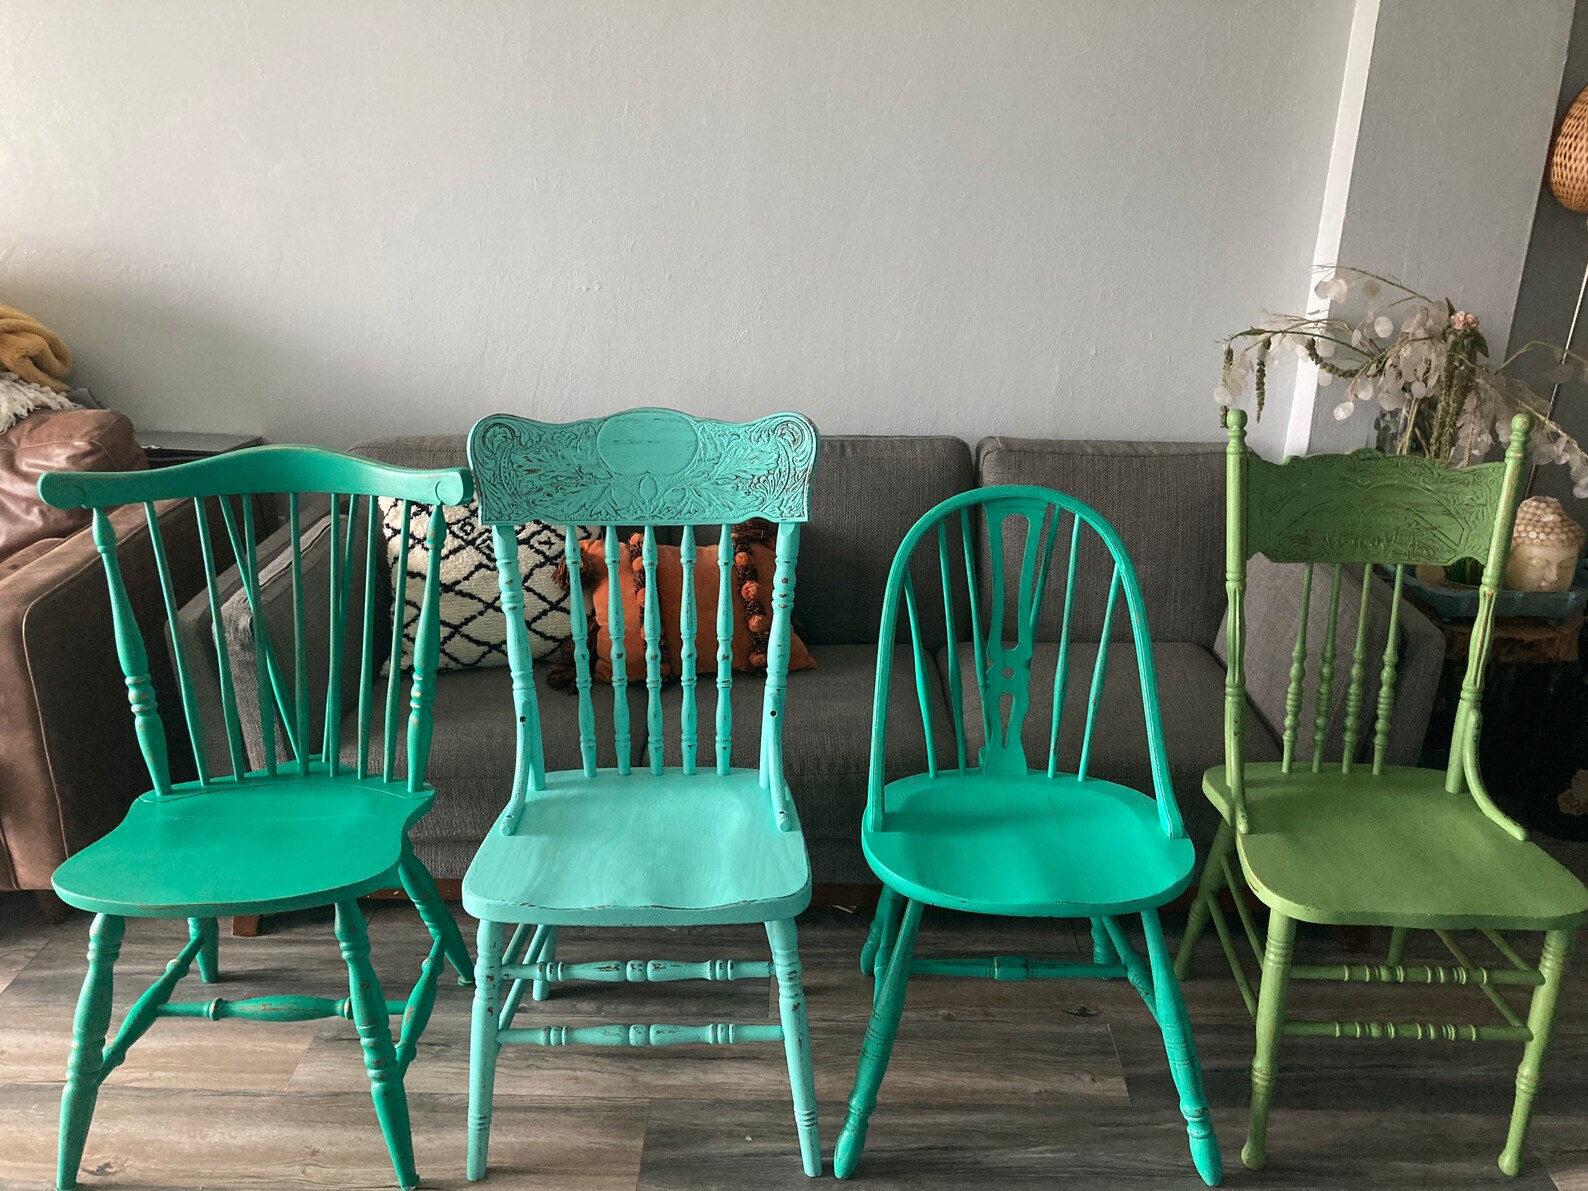 kitchen chairs add onassist bar